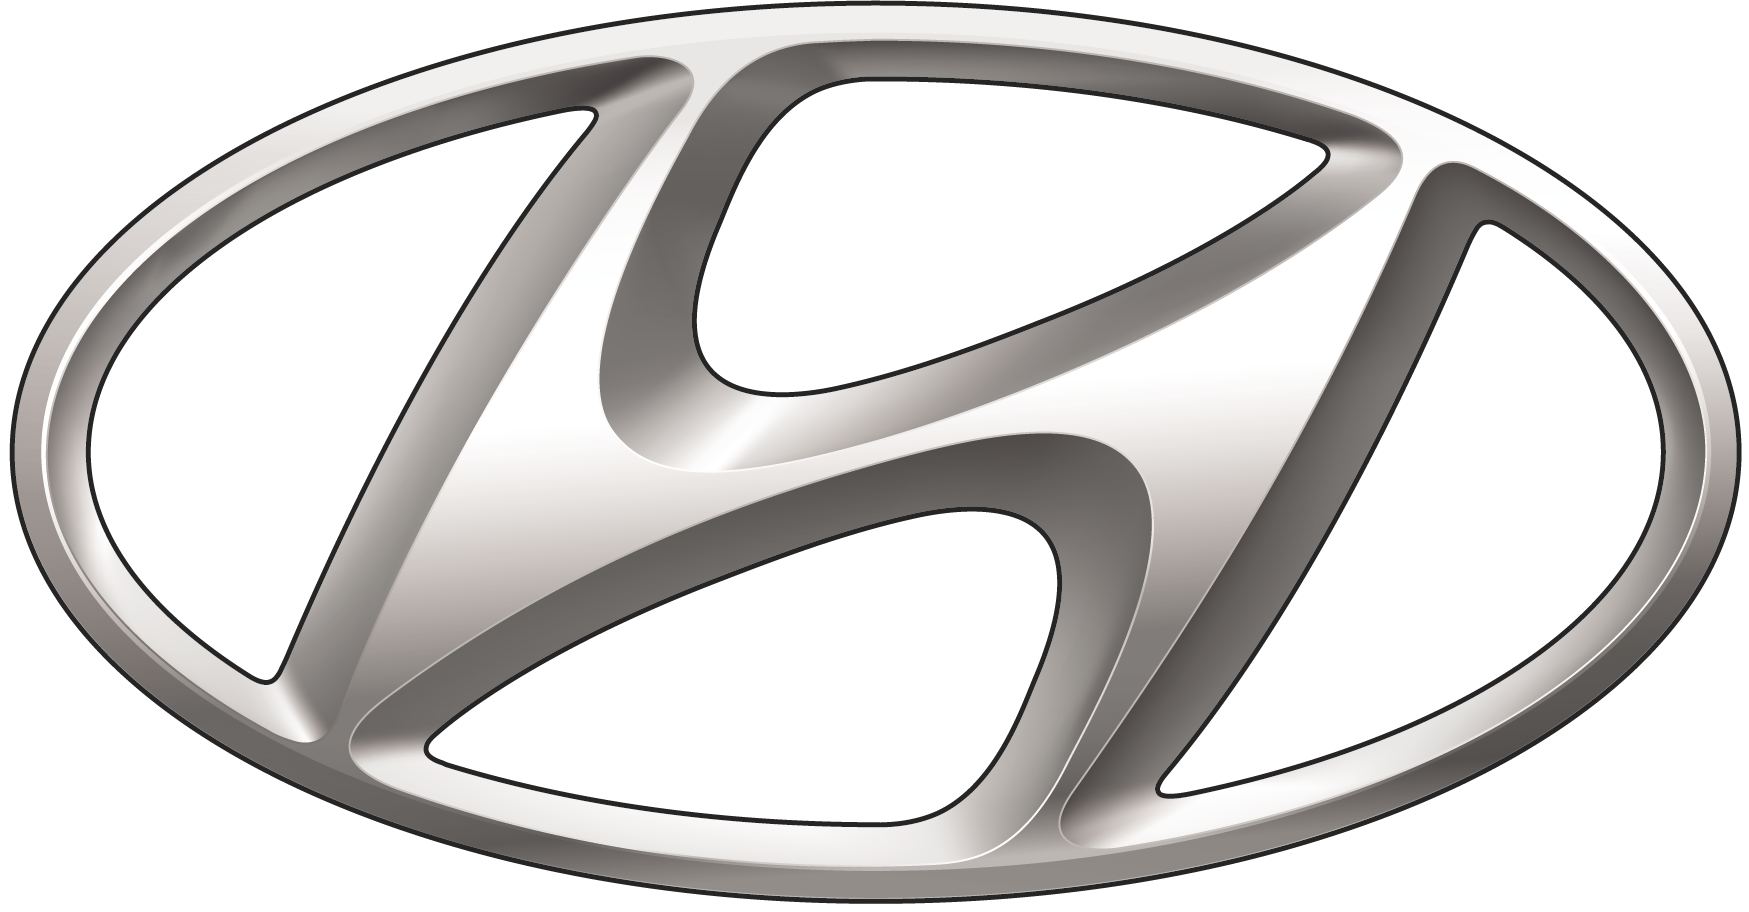 Hyundai logo PNG Image Transparente